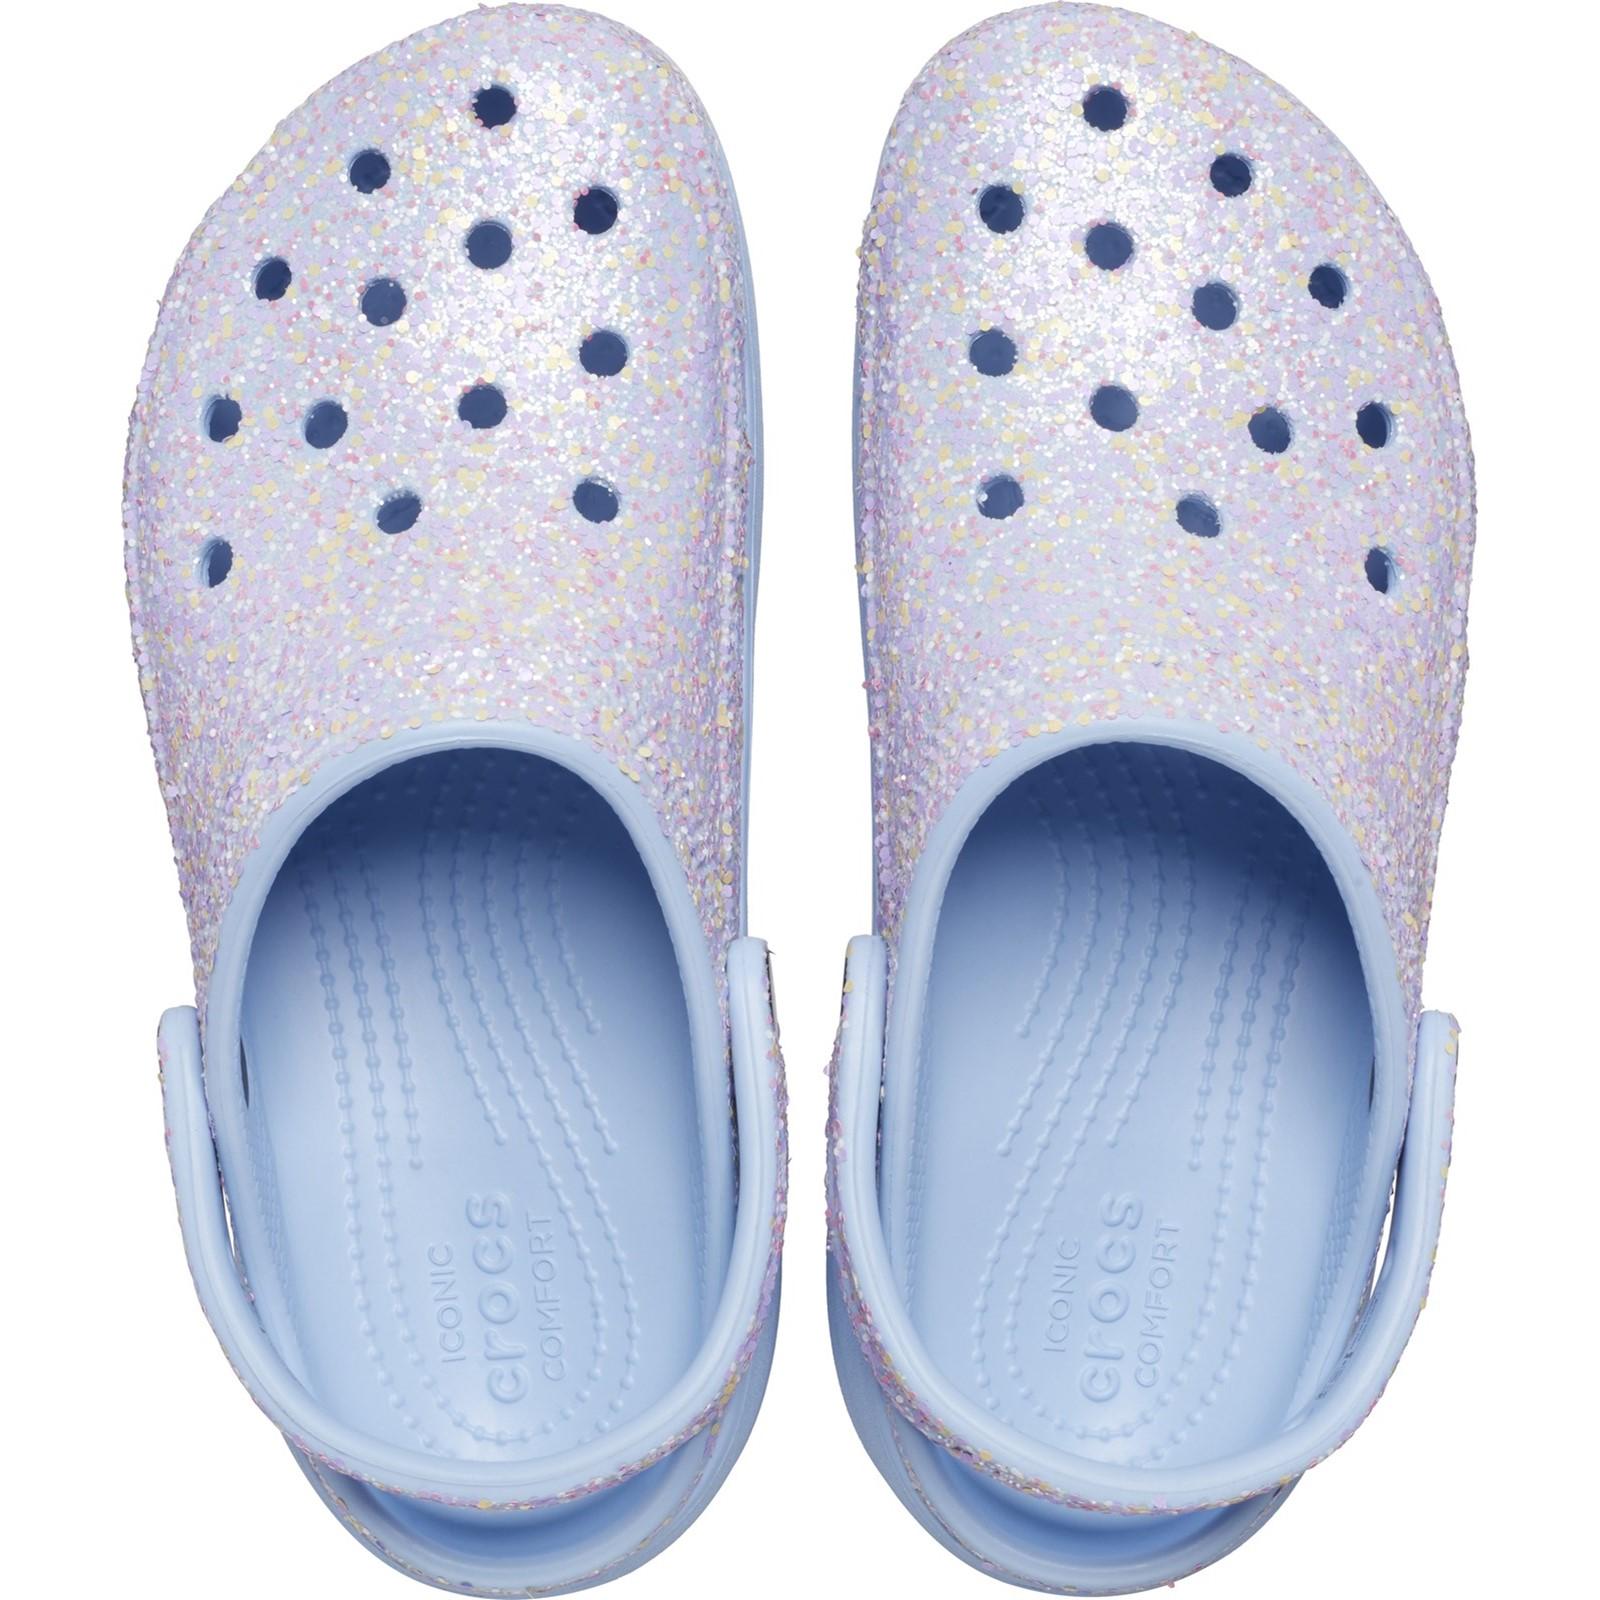 Crocs Classic Platform Glitter Clog Sandals